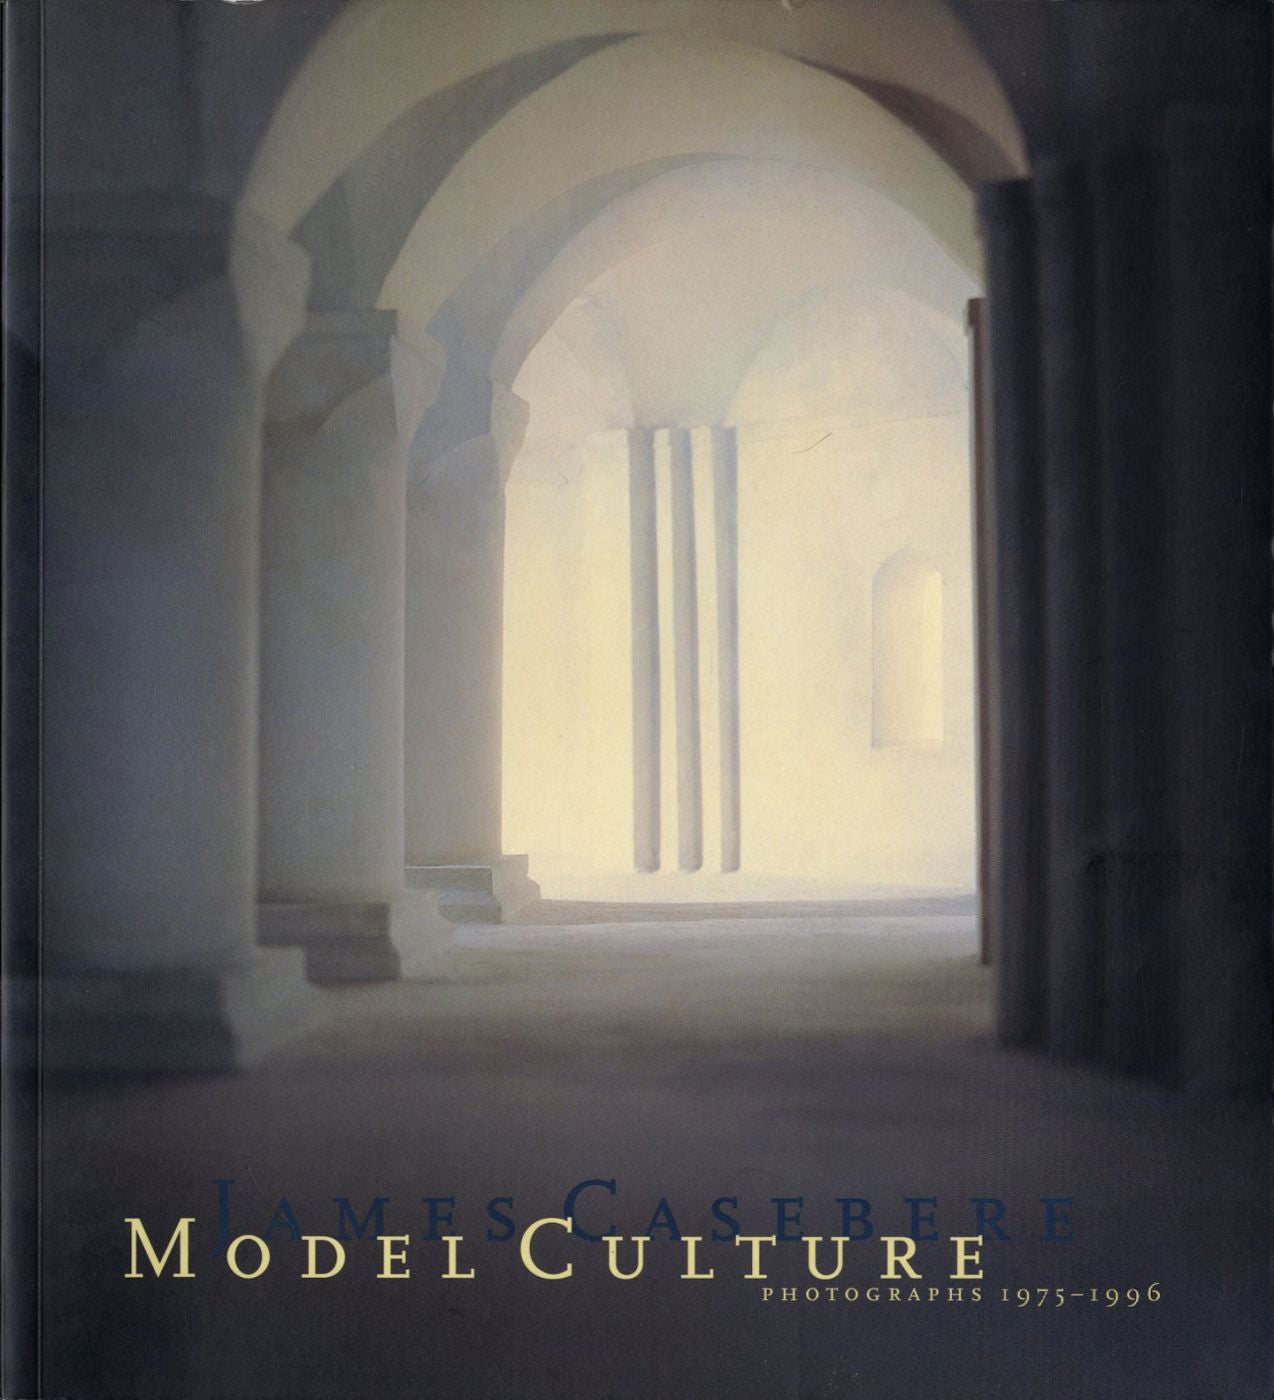 James Casebere: Model Culture - Photographs 1975-1996